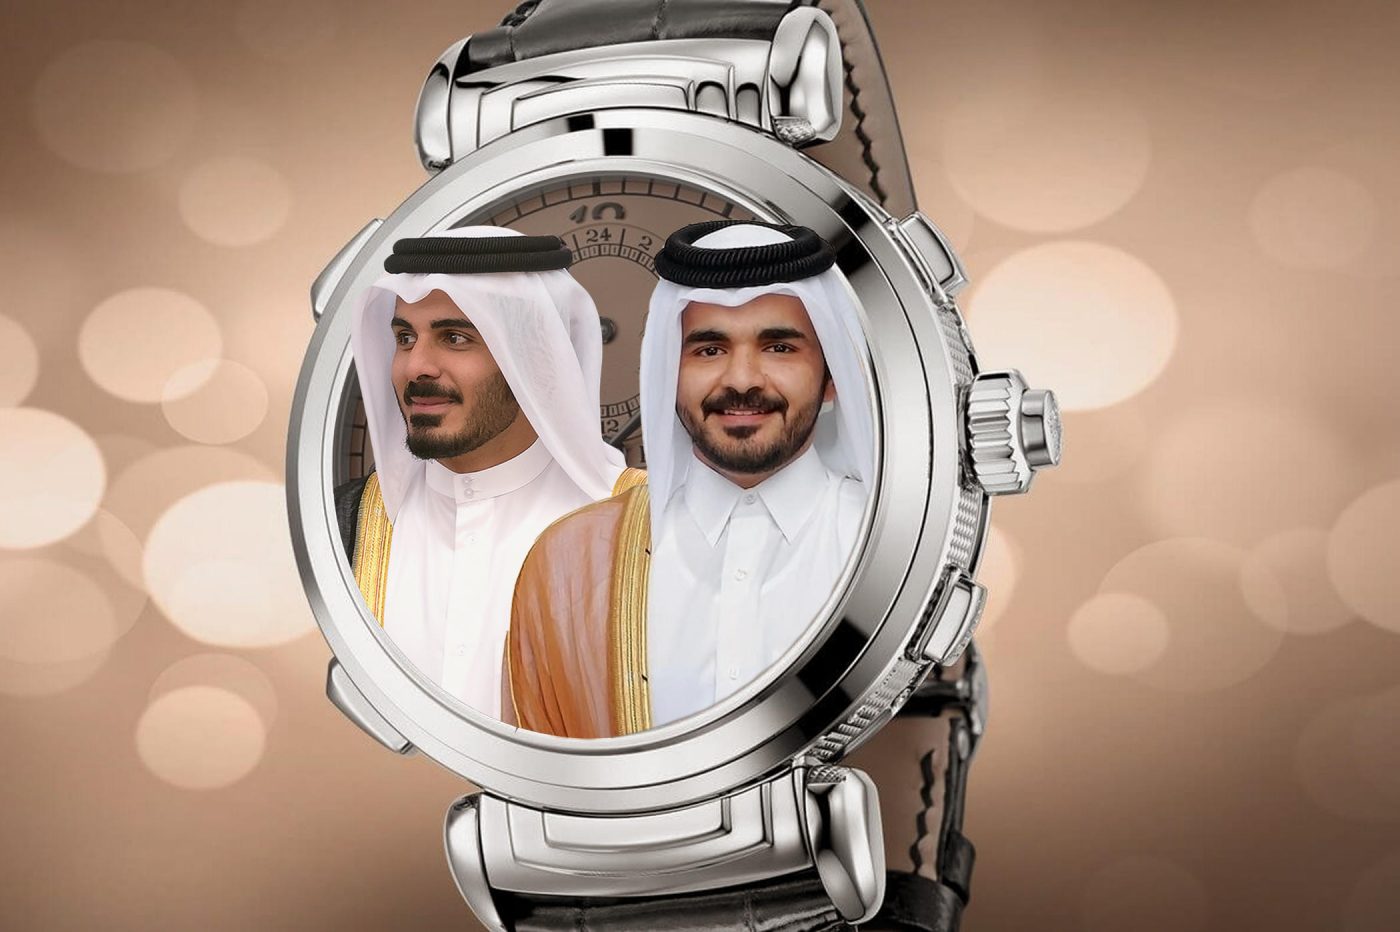 Timebloid Petro-zegarki, czyli co noszą szejkowie. Książęta Kataru – Joaan Bin Hamad i Khalifa Bin Hamad